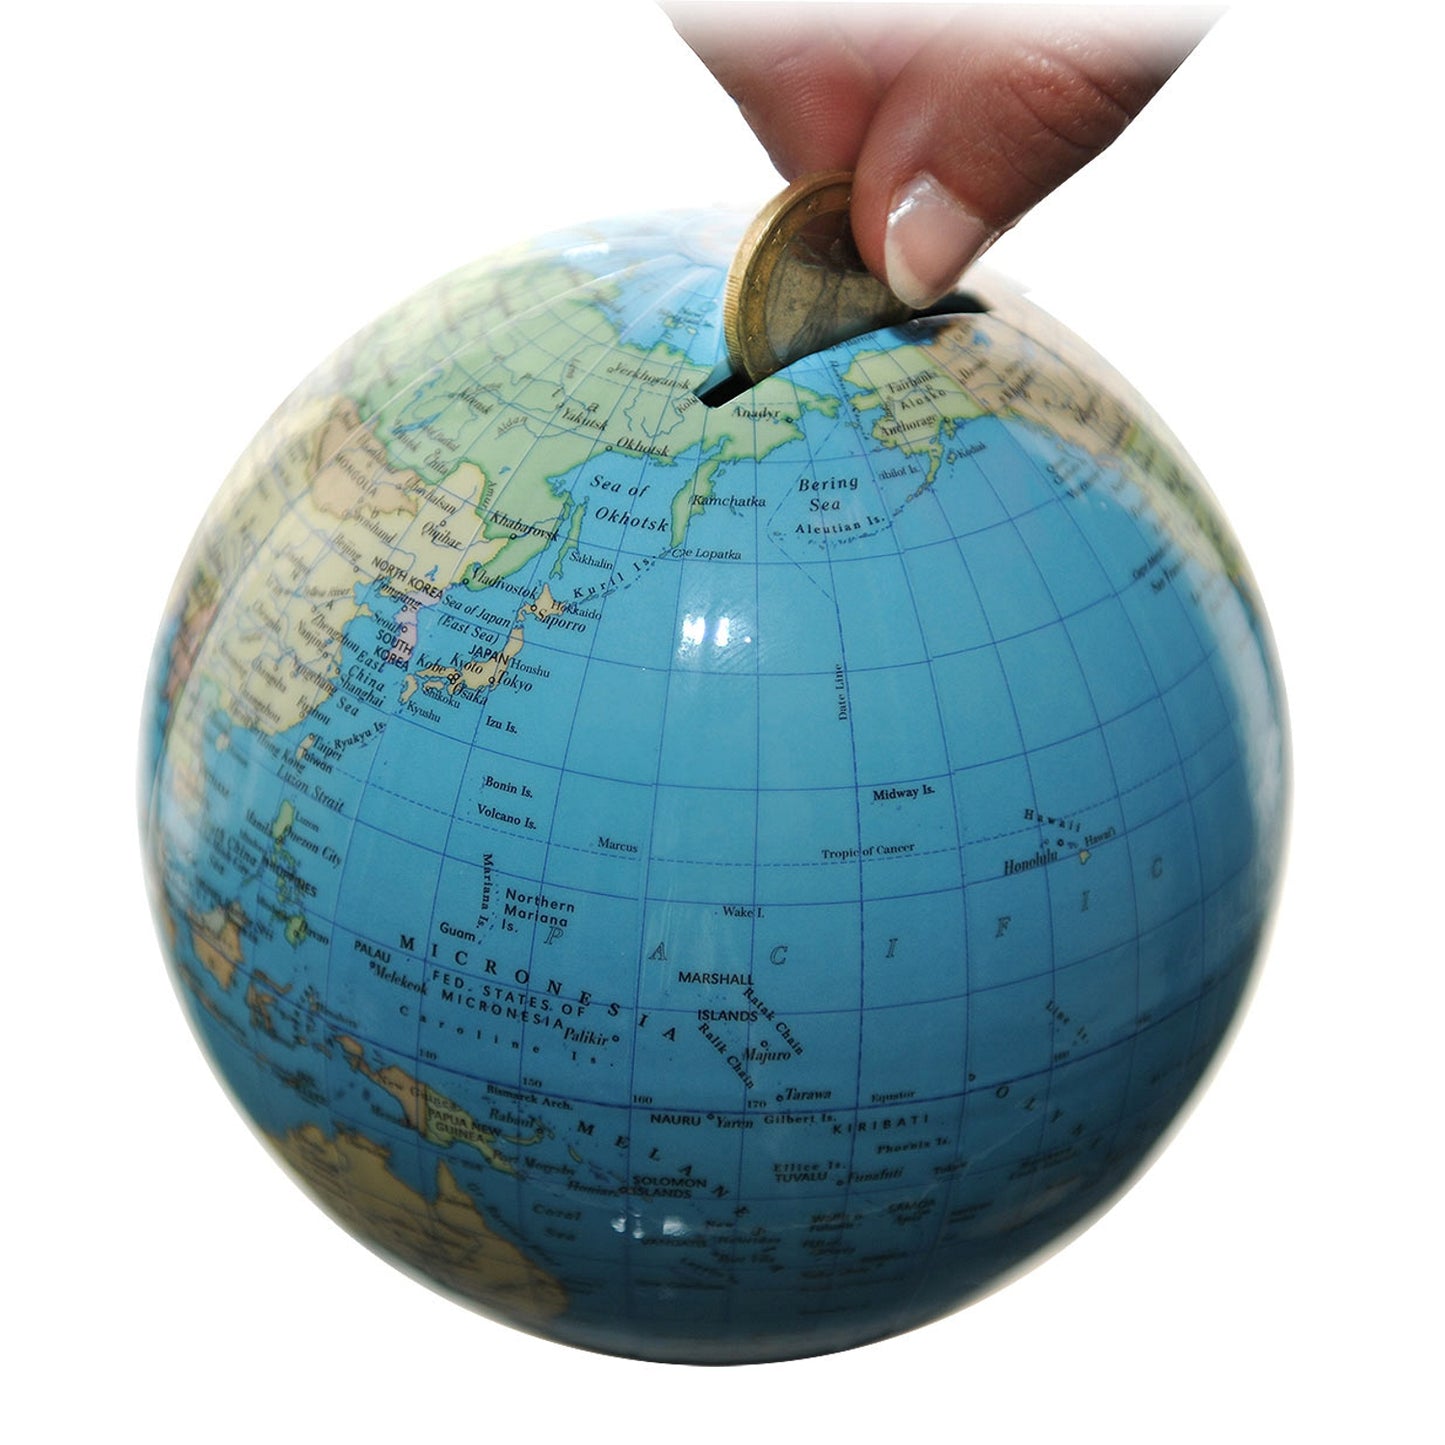 Tirelire mini globe Columbus D 12 cm, image de carte en anglais, différentes variantes